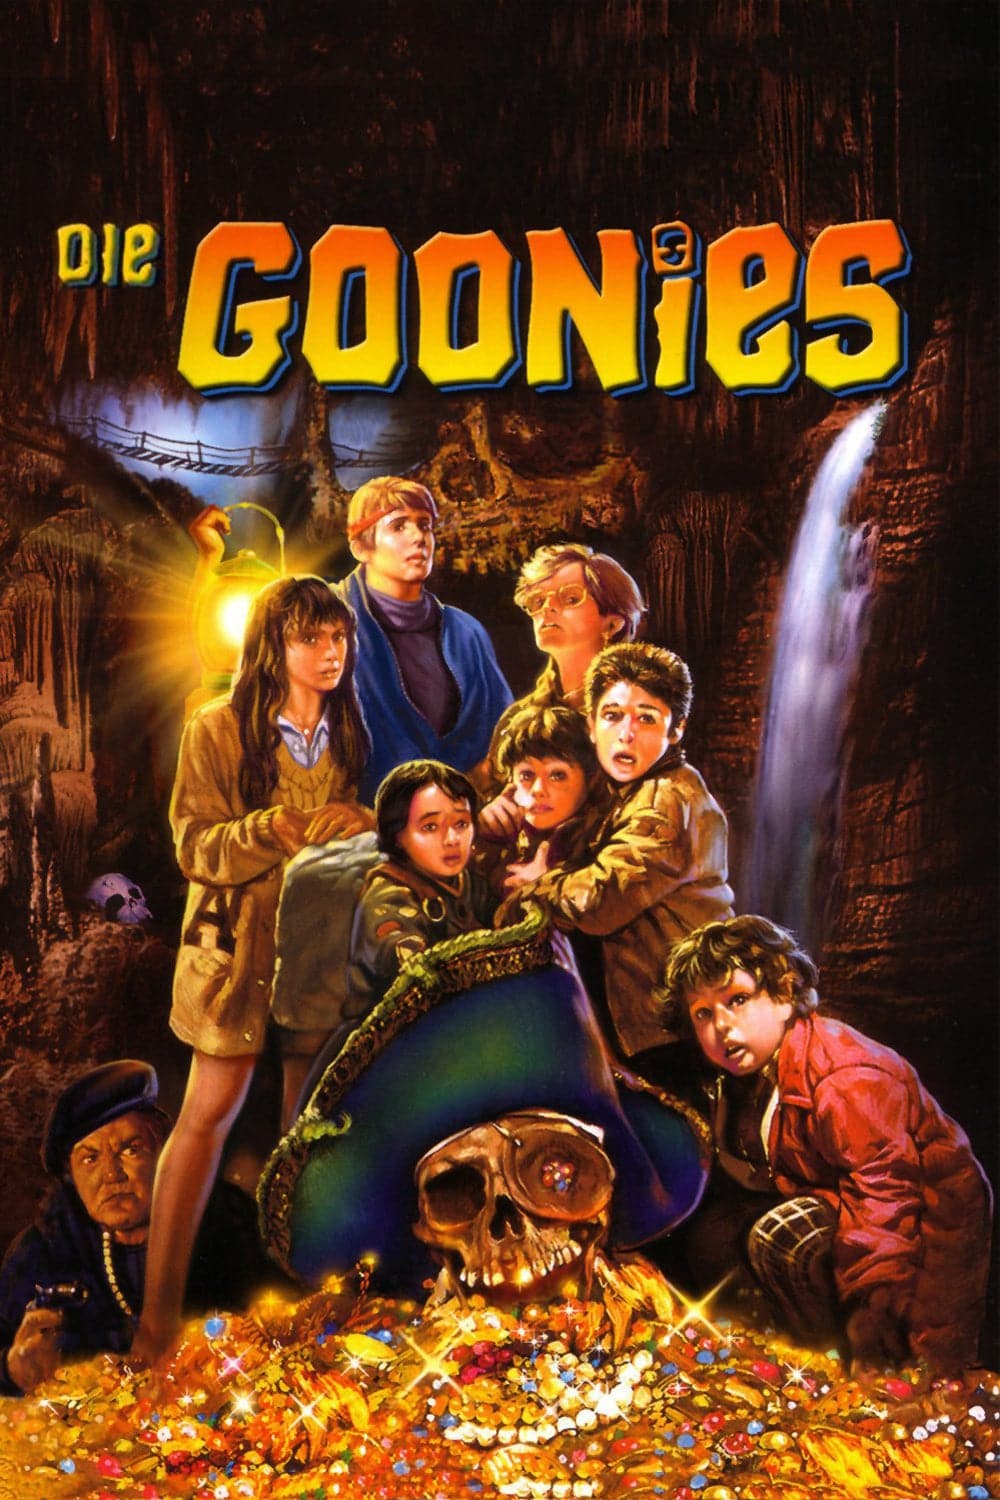 Plakat von "Die Goonies"